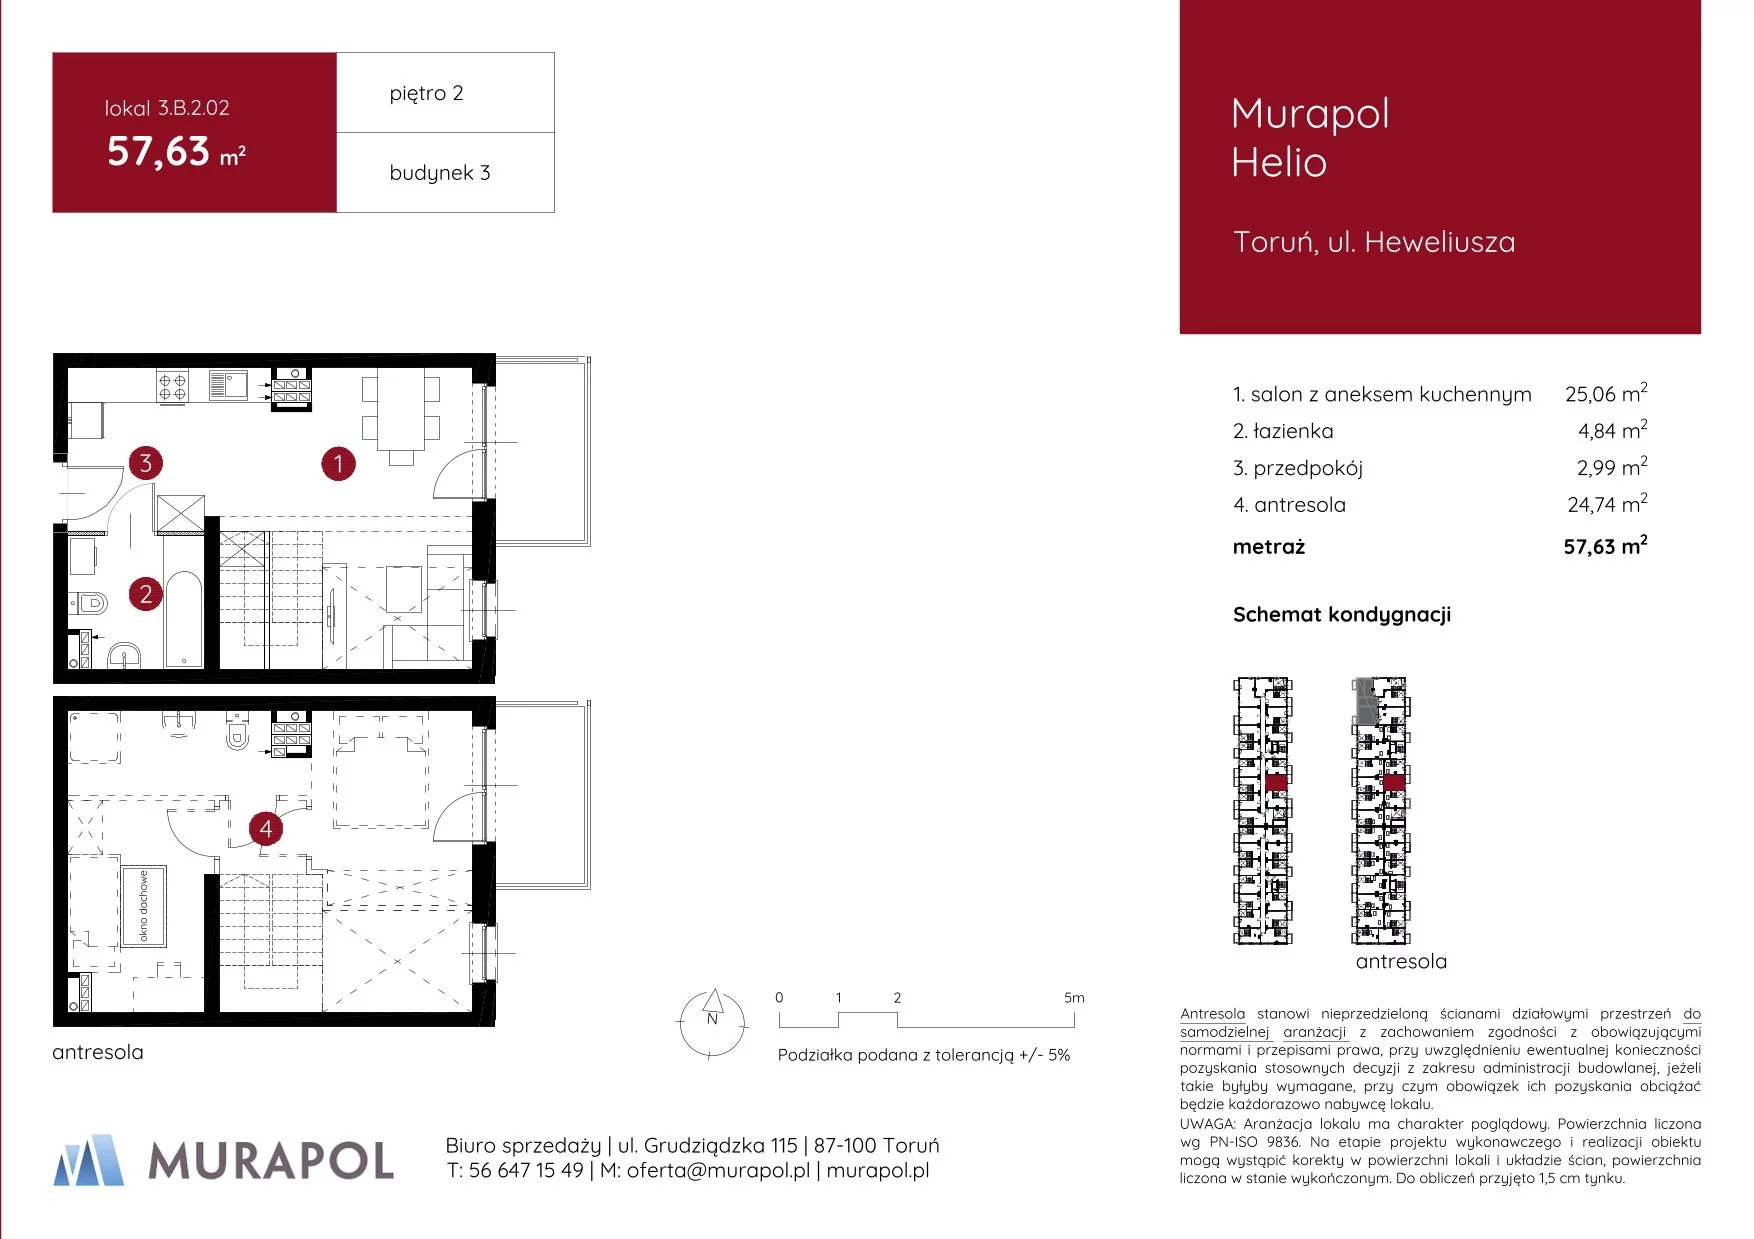 Mieszkanie 57,63 m², piętro 2, oferta nr 3.B.2.02, Murapol Helio, Toruń, Wrzosy, JAR, ul. Heweliusza